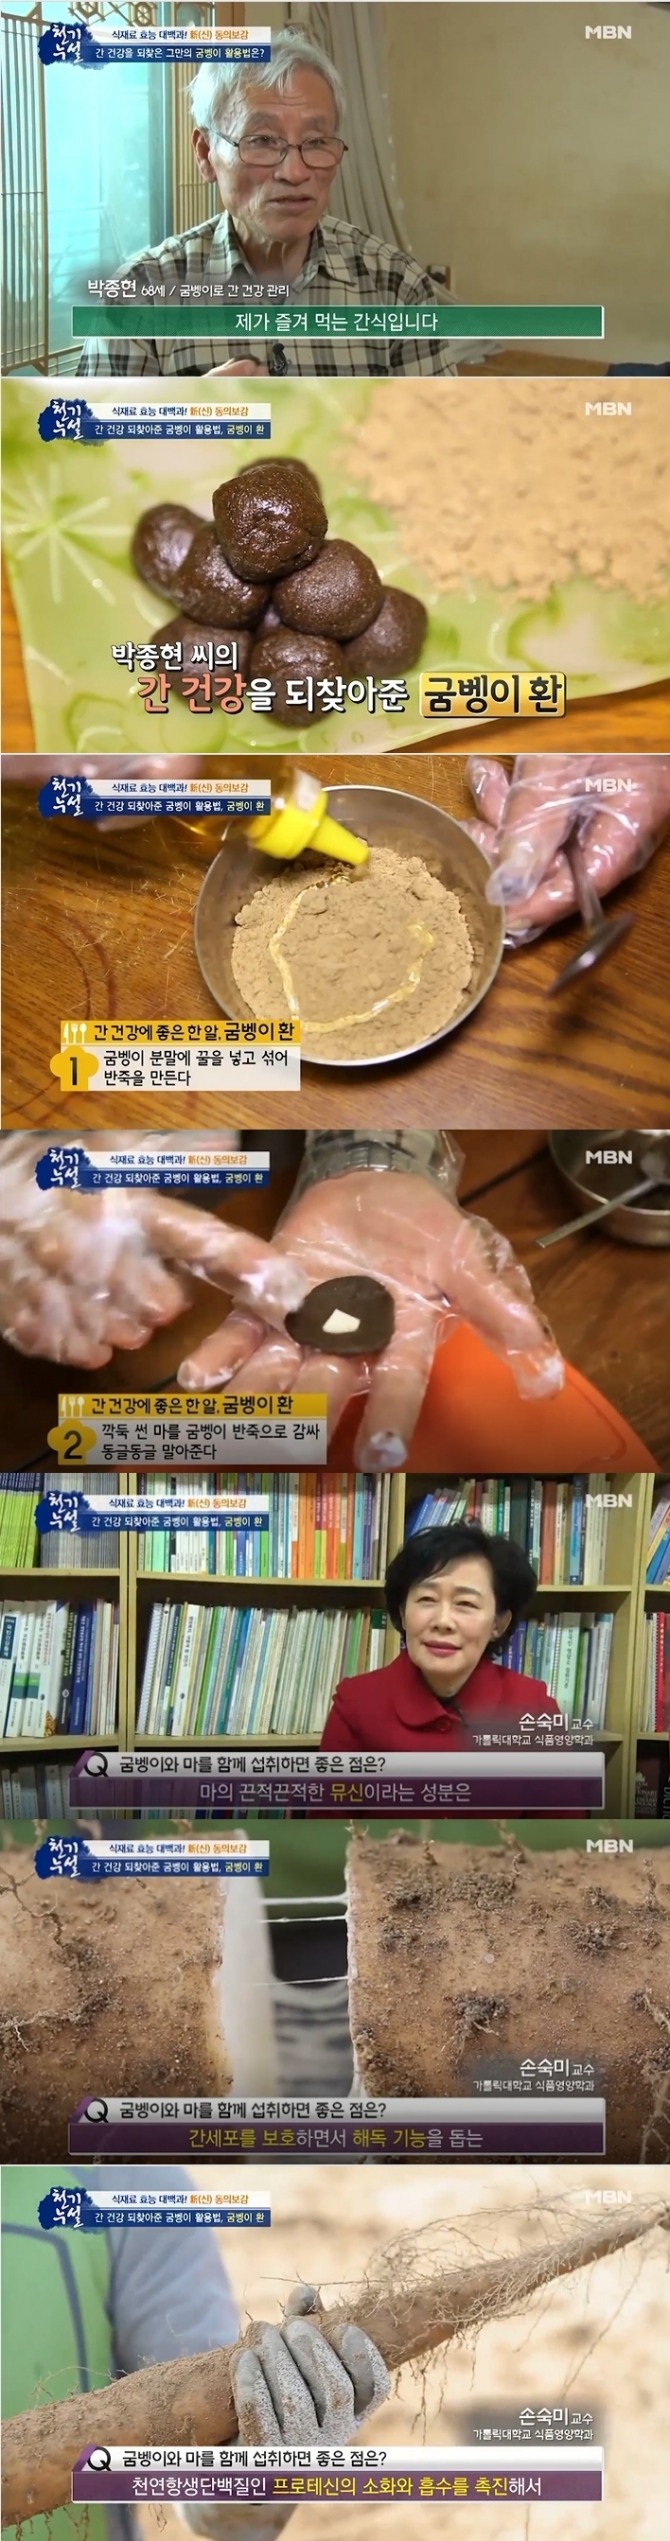 24일 방송된 MBN '천기누설' 561회에서는  간경변을 극복한 박종현(68 남)씨가 출연, 6년 만에 간 건강을 되찾은 그만의 비결로 굼벵이분말을 이용한 '굼벵이 환' 만드는 법을 소개했다.사진=MBN 방송 캡처